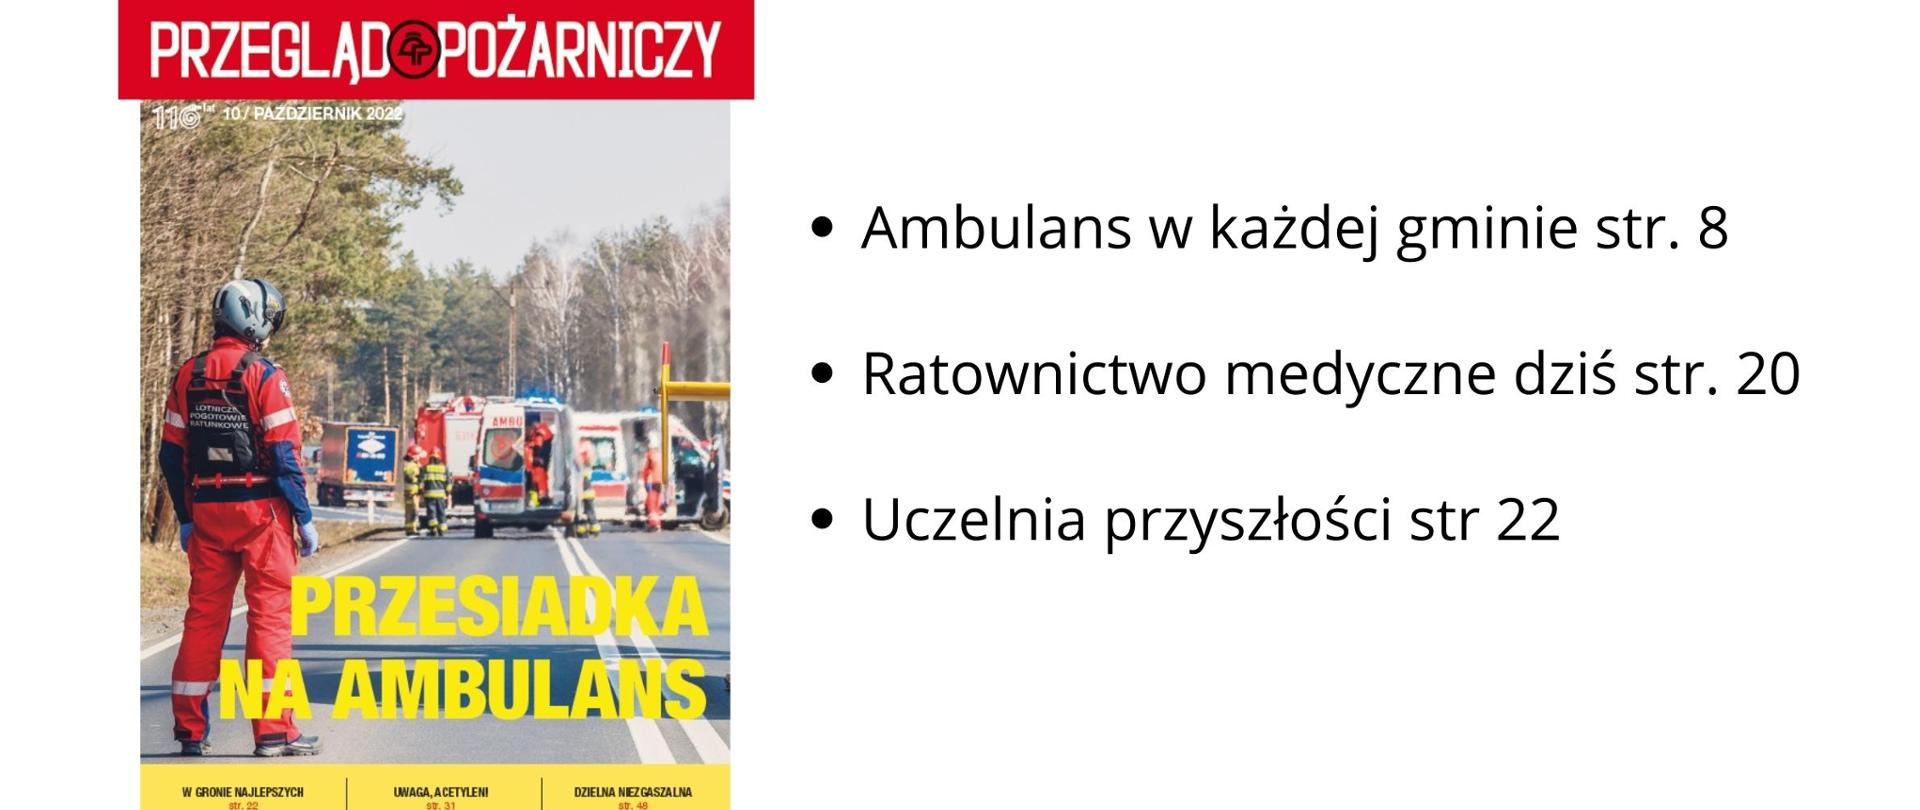 Na zdjęciu, po lewej stronie, widać okładkę Przeglądu Pożarniczego, Po prawej czarny napis na białym tle "Ambulans w każdej gminie".